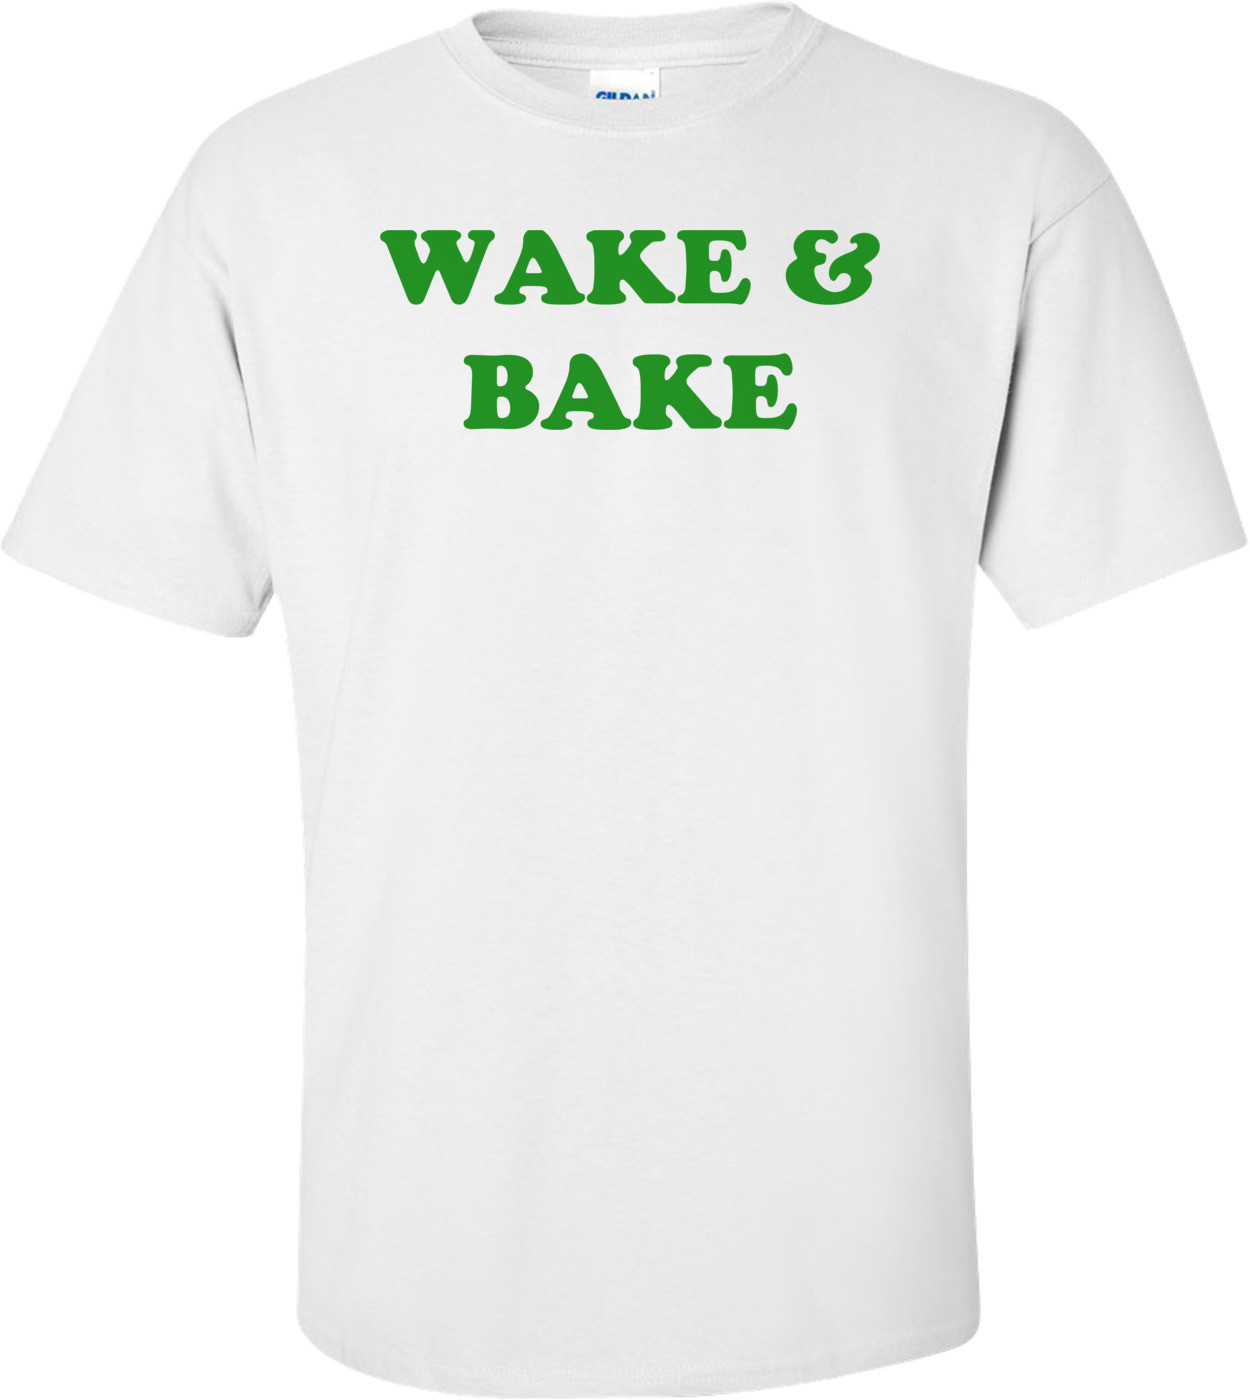 WAKE & BAKE Shirt